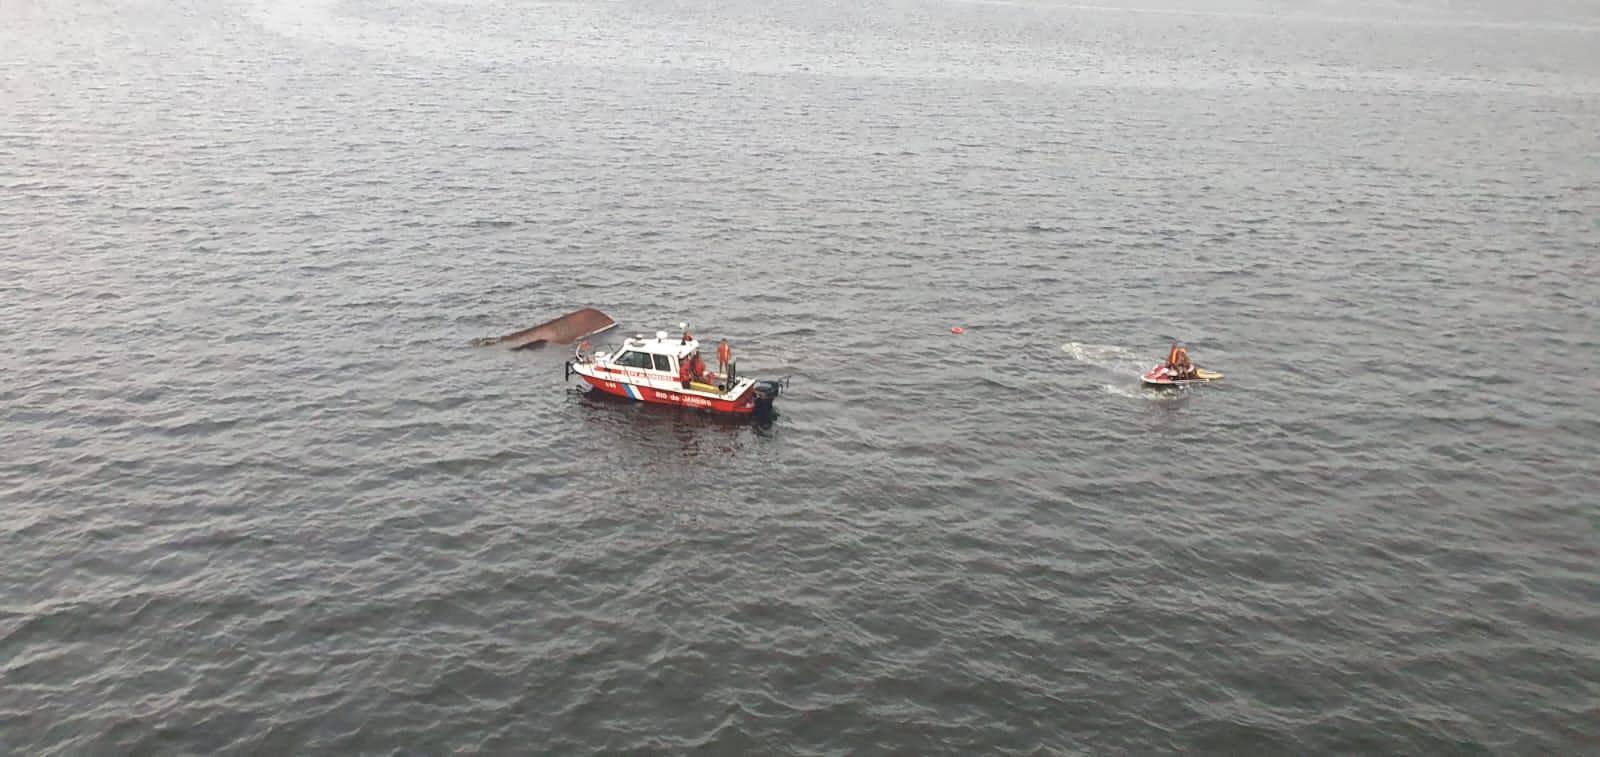 14 pessoas estavam a bordo da embarcação que virou na Baía de Guanabara